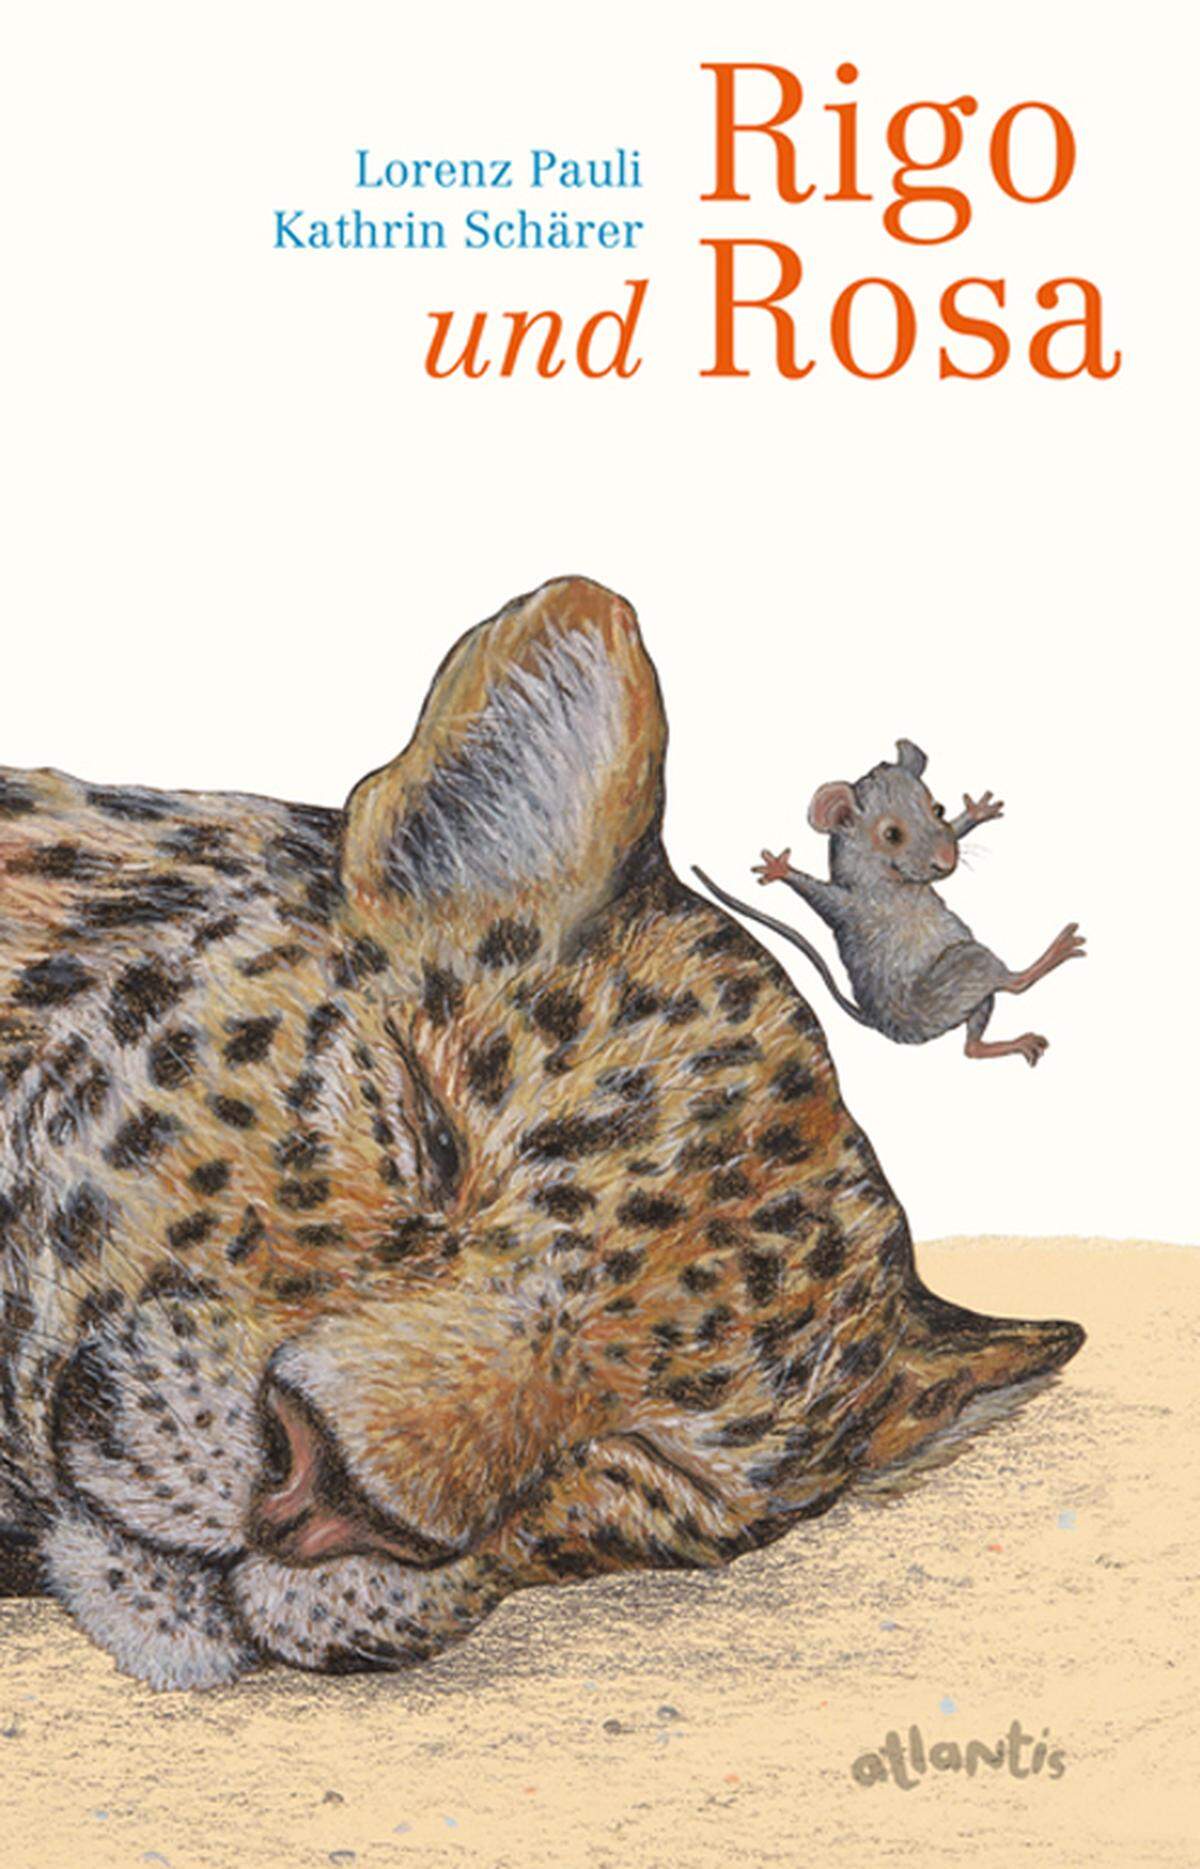 Die kleine Maus Rosa kann nicht schlafen, weil sie Angst vor großen Tieren hat. Naheliegend, würde man sagen, denn Rosa wohnt im Zoo, große und gefährliche Tiere sind also durchaus vorhanden. Weniger naheliegend ist aber, dass Rosa bei einem Tier Schutz sucht, das für ein Mäuschen der Inbegriff von groß und gefährlich sein müsste: bei einem Leoparden. Diesen trifft das Vertrauen des Mäuschens aber ebenso unvorbereitet wie heftig, weshalb sich eine Freundschaft entwickelt. Für Rosa gibt es bald nur noch zwei Sorten von Tagen: "Tage, an denen sie zu Rigo ging. Das waren gute Tage. Und Tage, an denen sie nicht zu Rigo gehen konnte, weil sie schon dort war. Das waren auch gute Tage." So führen die beiden viele Gespräche, lachen mit einander, lernen von einander. Der Ton, in dem die beiden miteinander sprechen, ist warm, fragend, entdeckend. Und lässt "Rigo und Rosa" zu einem besonderen Vorlesebuch werden. Die wunderbaren Illustrationen stammen von Kathrin Schäfer, die Gefühle in ein Mäusegesicht zeichnen kann wie keine Zweite. Alter: Ab fünf Jahren. Erschienen bei Atlantis. 128 Seiten.  